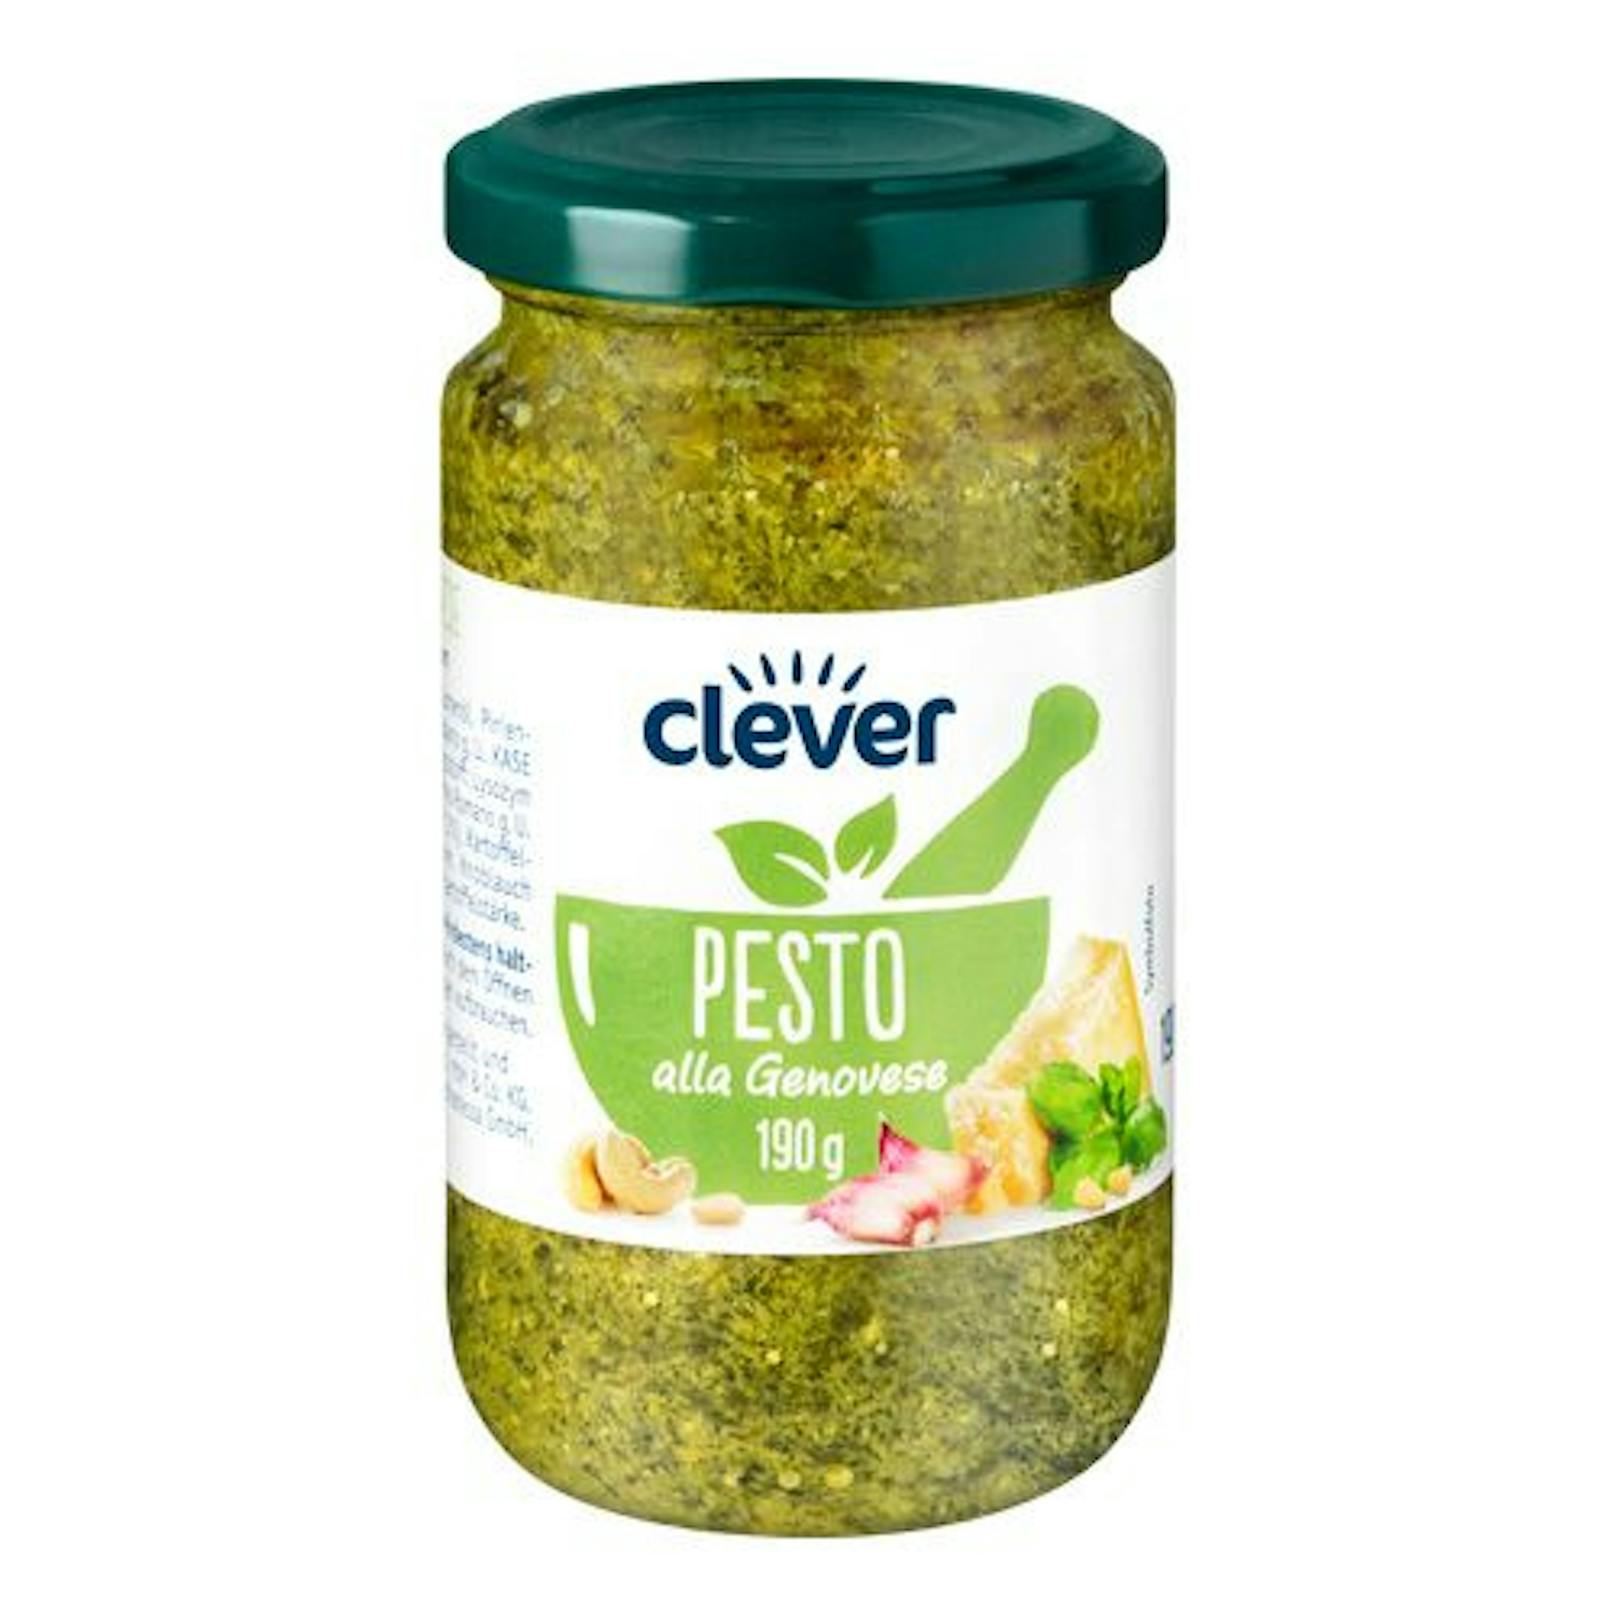 "DURCHSCHNITTLICH": clever Pesto alla Genovese